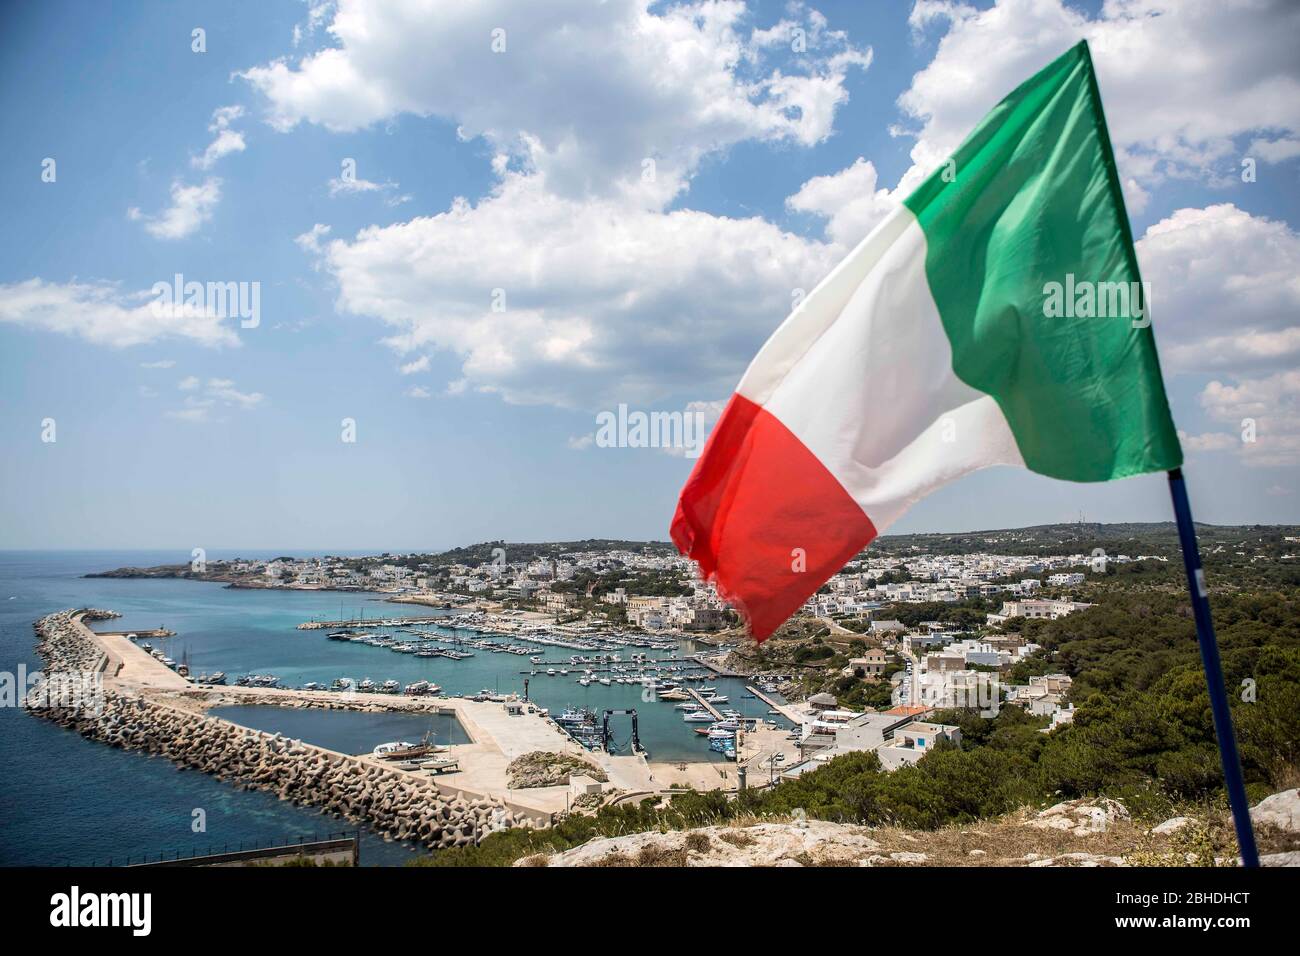 Die italienische Flagge in den Farben Grün-Weiss-Rot wht über der Stadt Santa Maria di Leuca in Apulien in Süditalien. Unterhalb des Kaps sieht man di Stock Photo